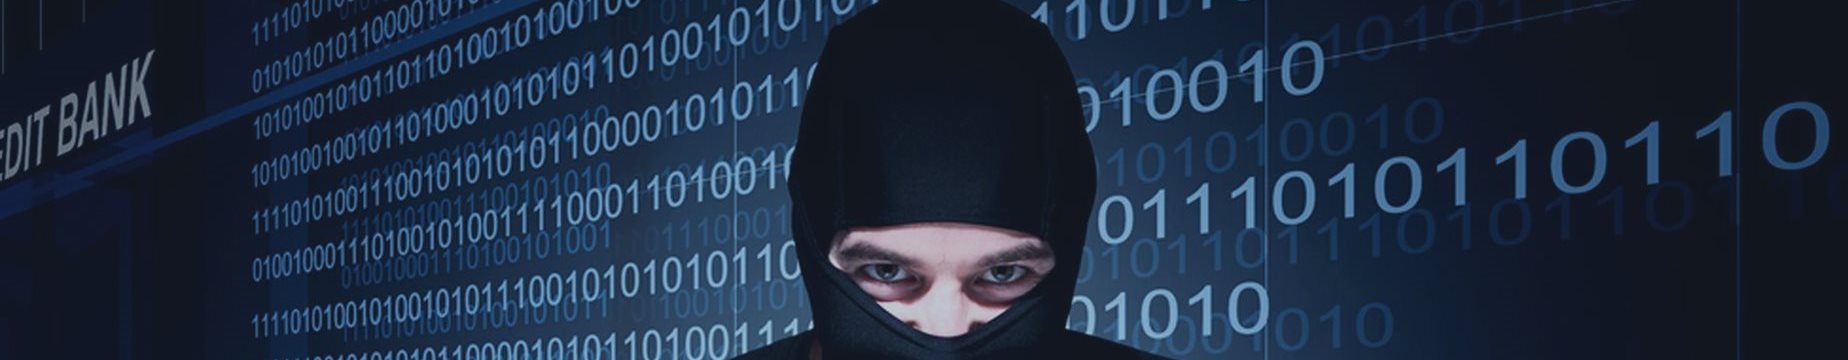 Microsoft позволила русским хакерам шпионить за НАТО и ЕС